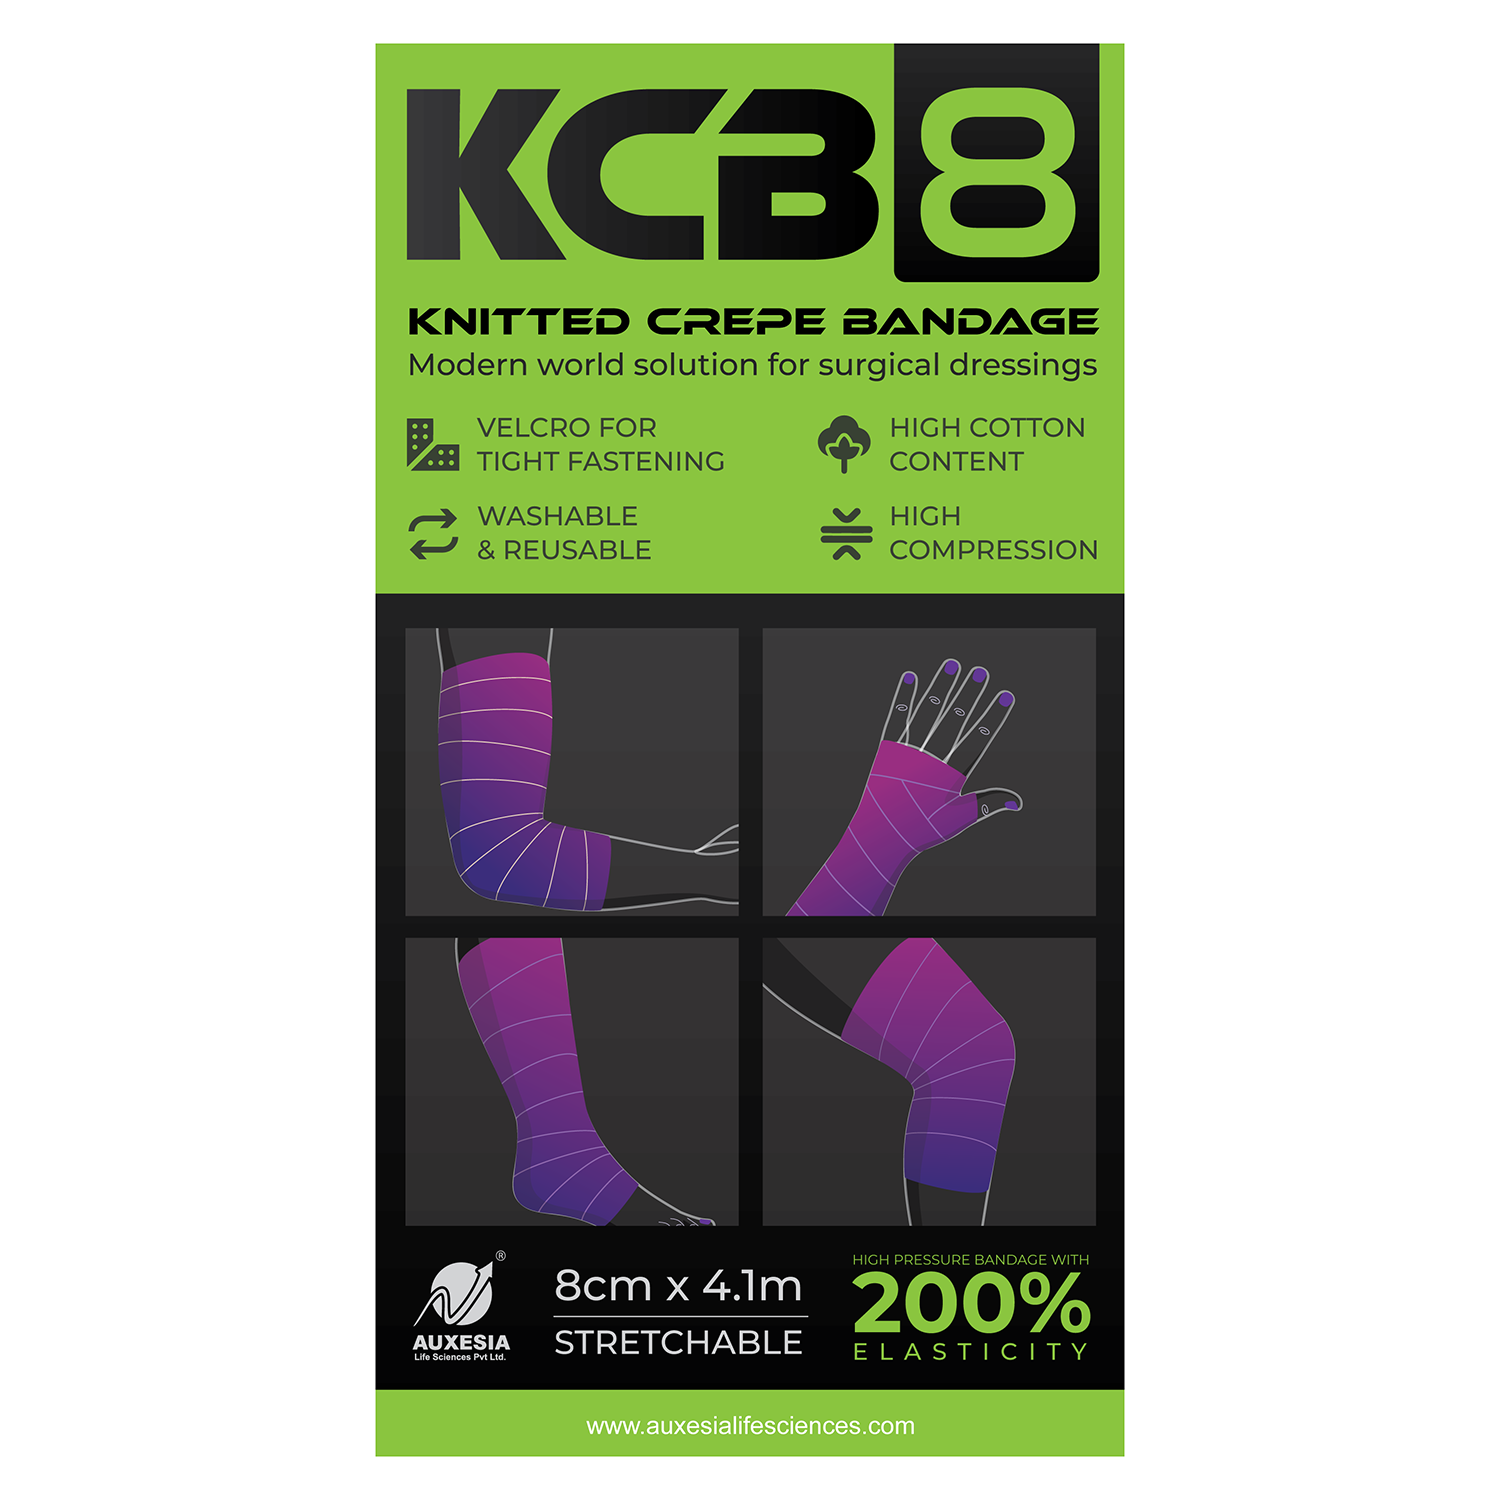 Knitted Crepe Bandage (KCB 8)